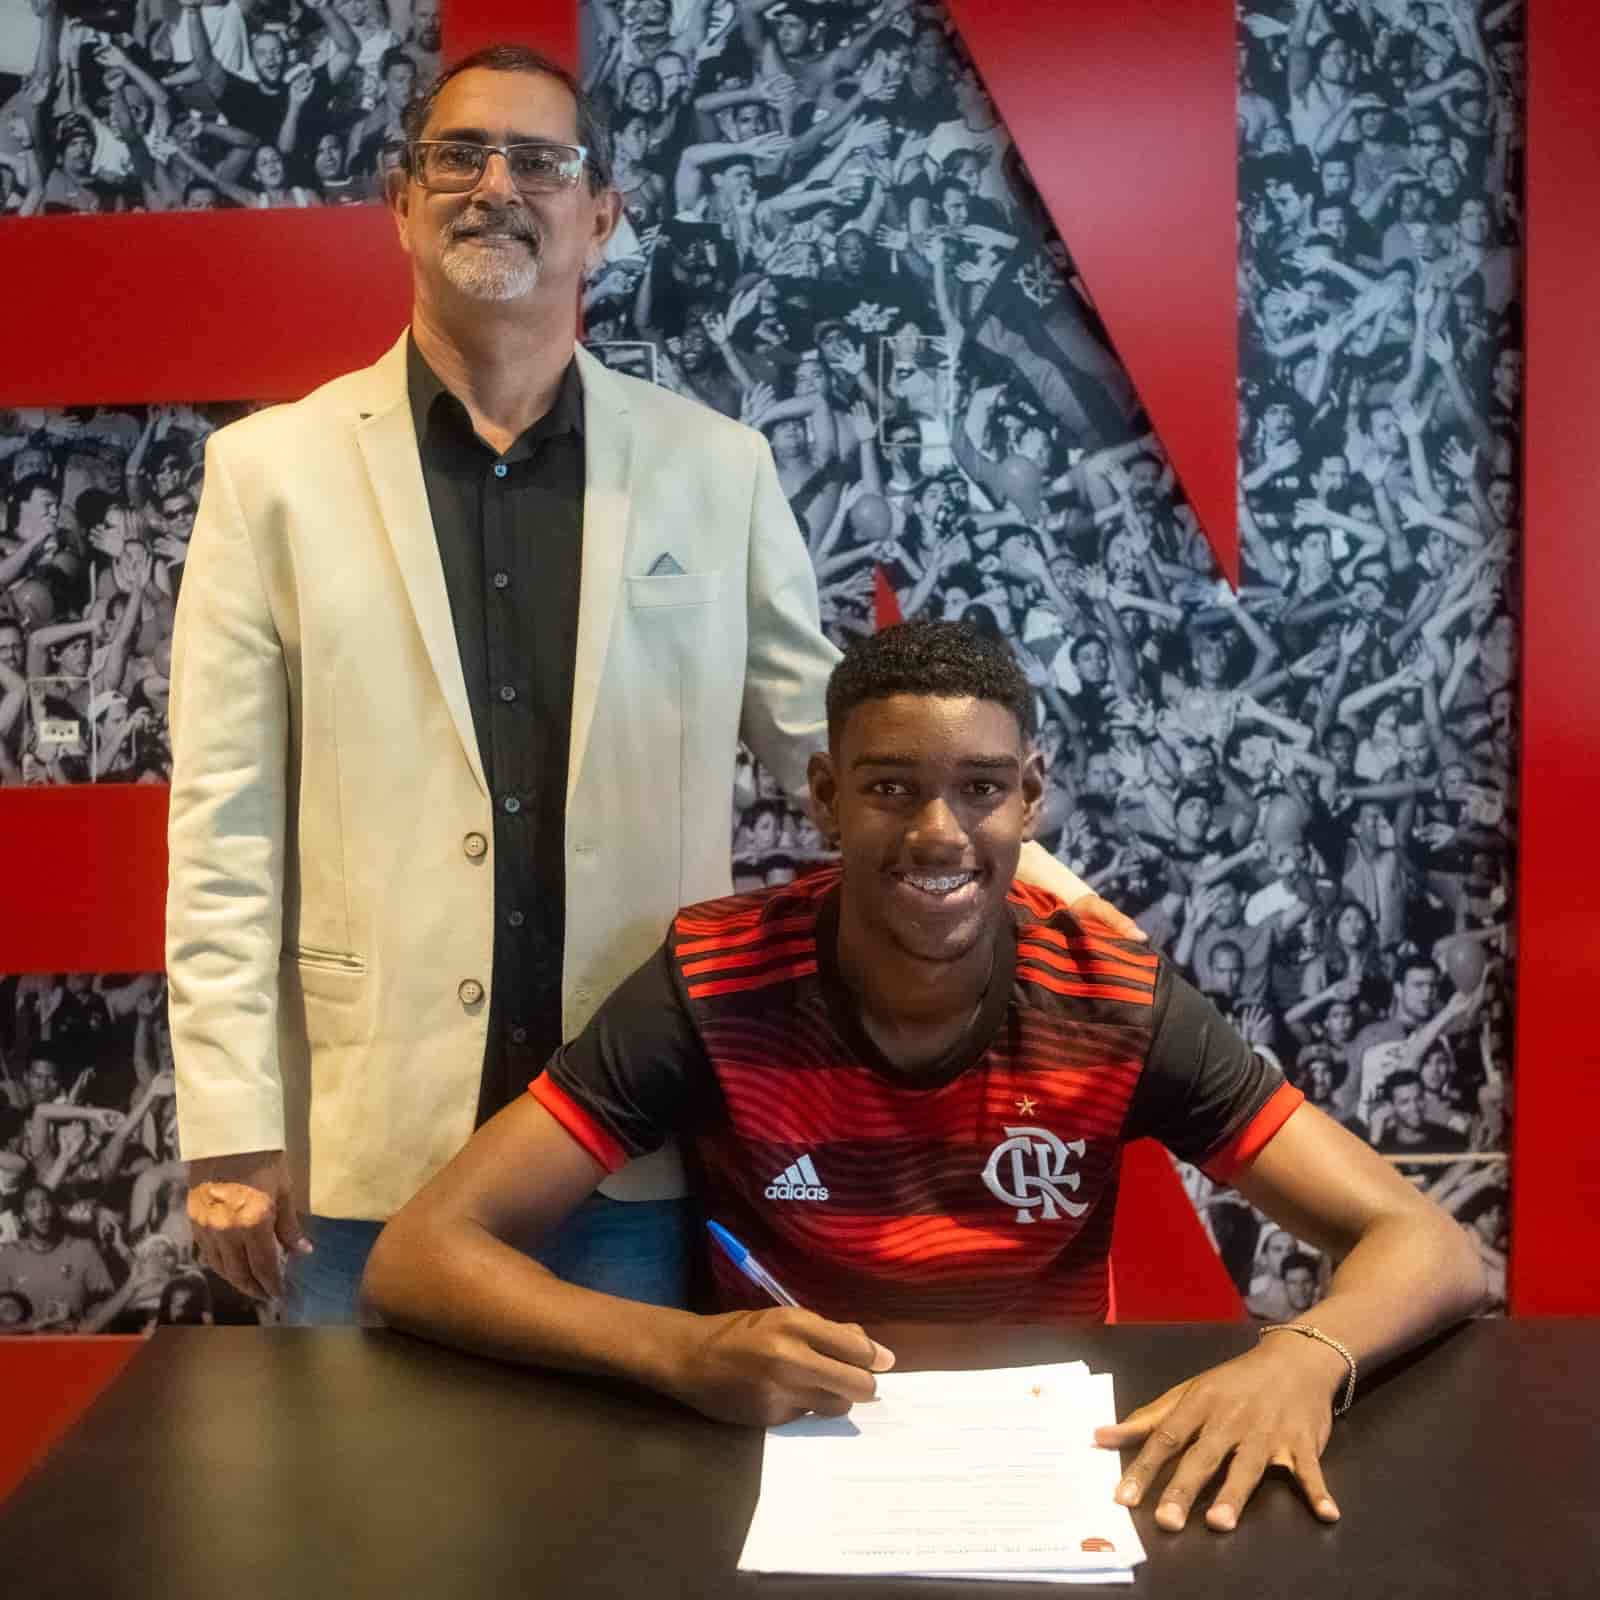 Felipe Lima Sub-17 do Flamengo